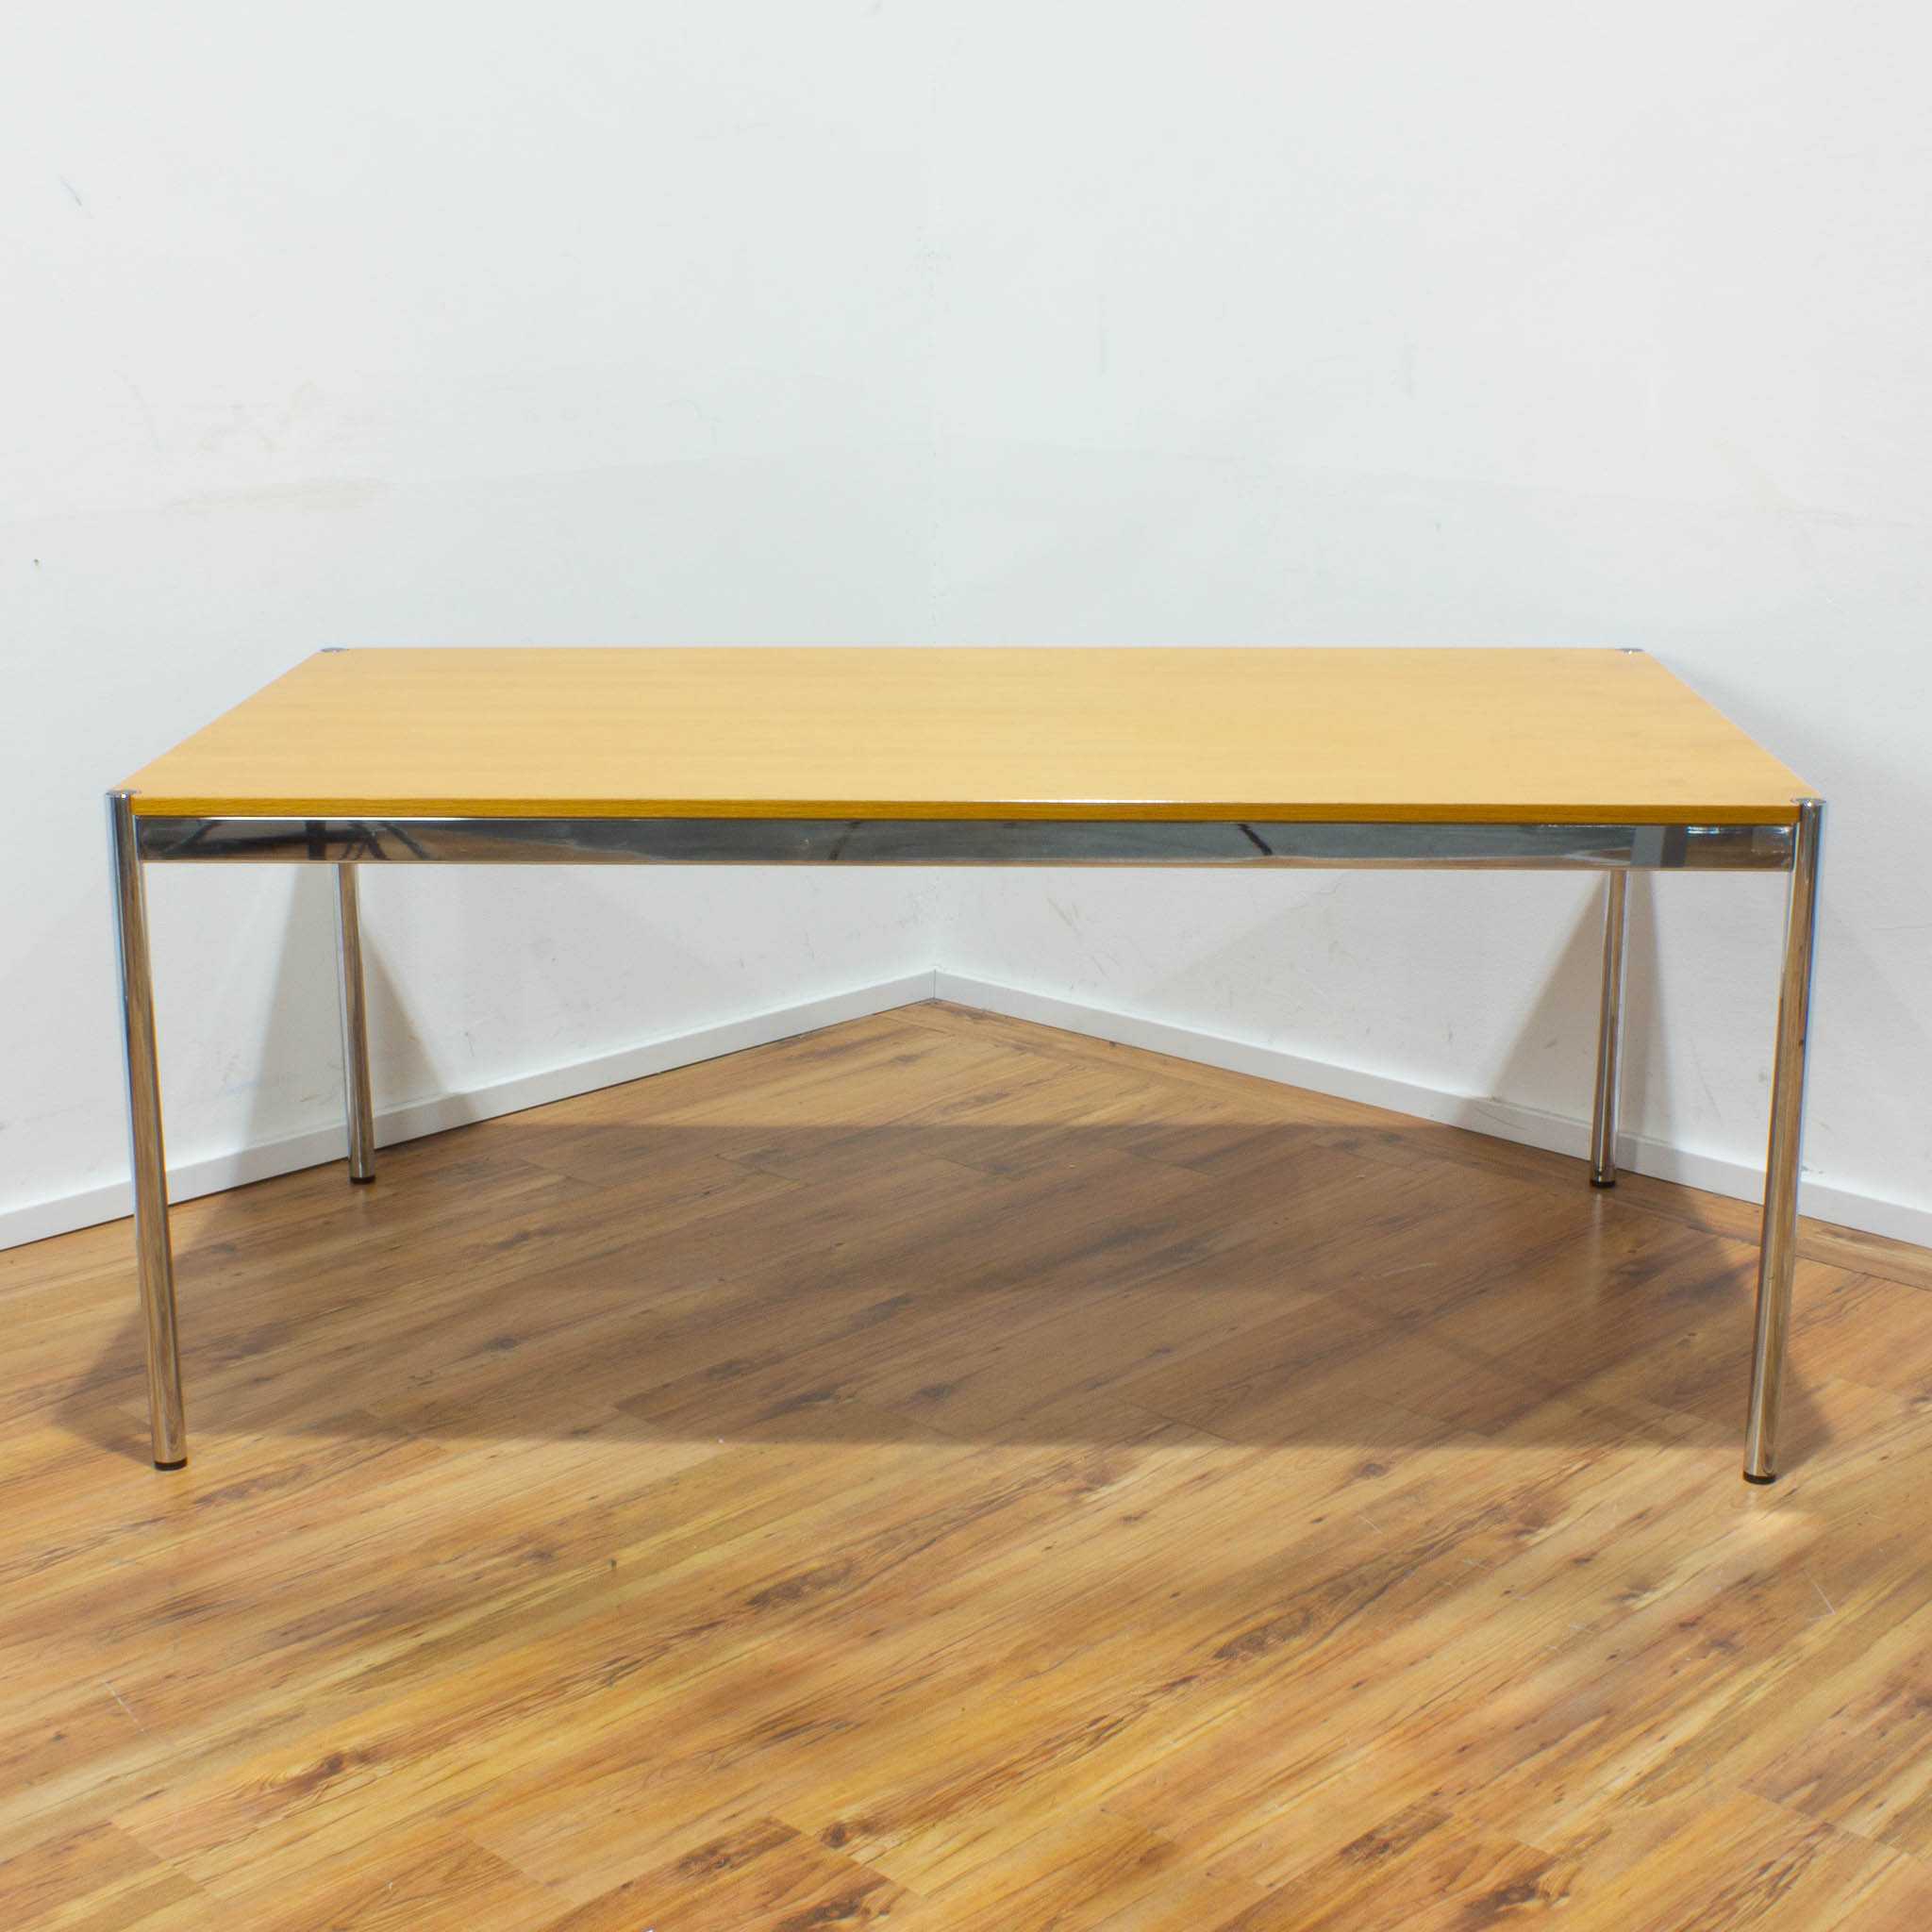 USM Haller Schreibtisch - Tischplatte eiche - gebraucht - 175 x 100 cm